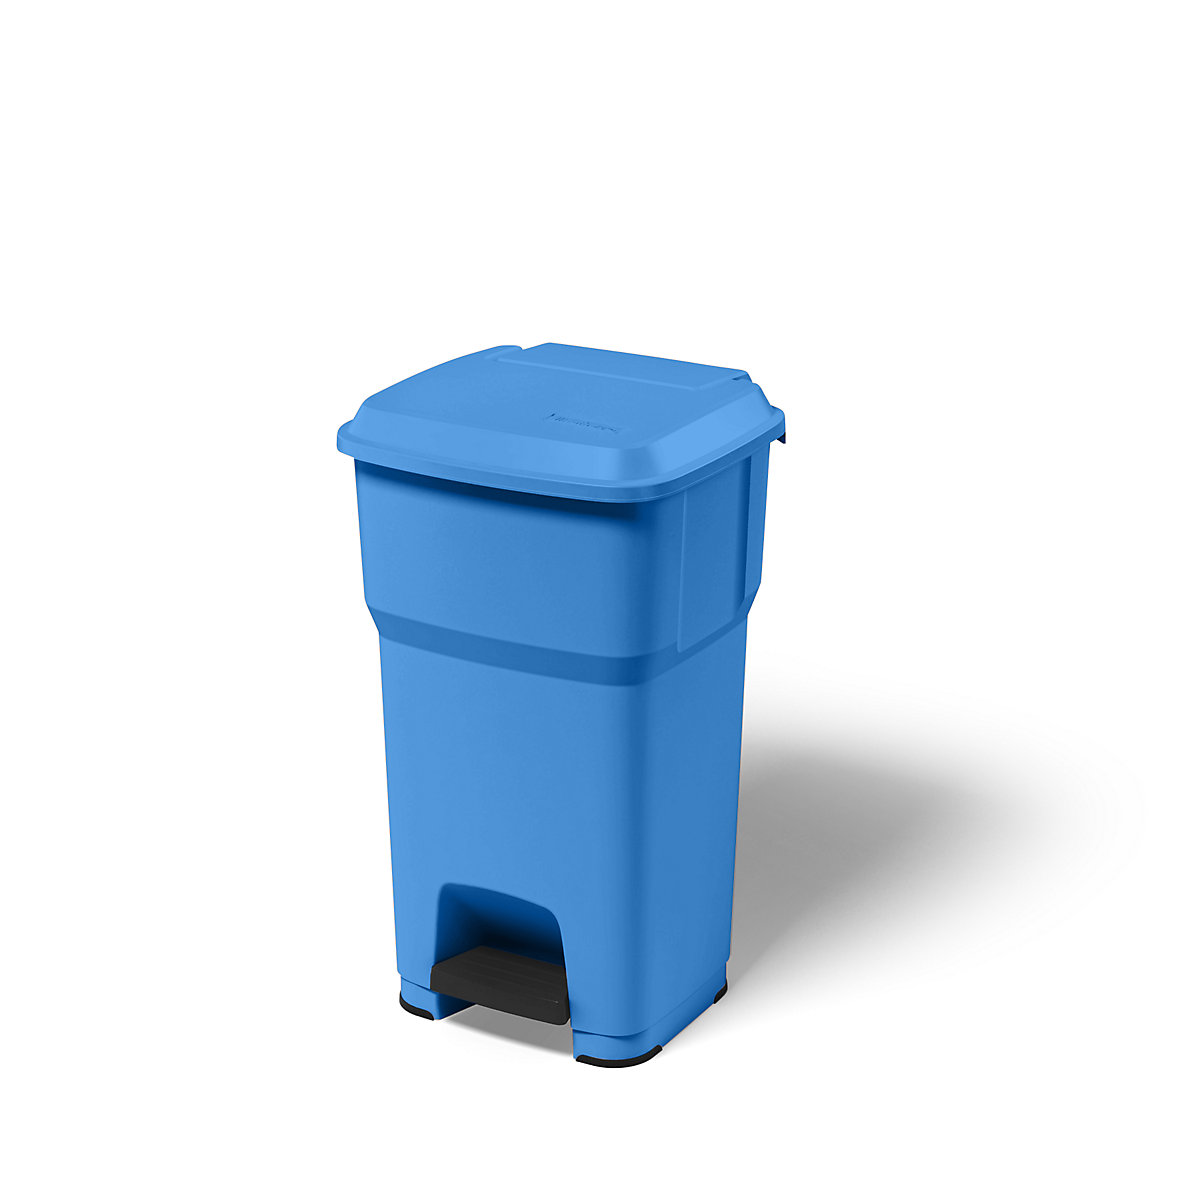 rothopro – Collecteur de déchets à pédale HERA, capacité 60 l, l x h x p 390 x 690 x 390 mm, bleu